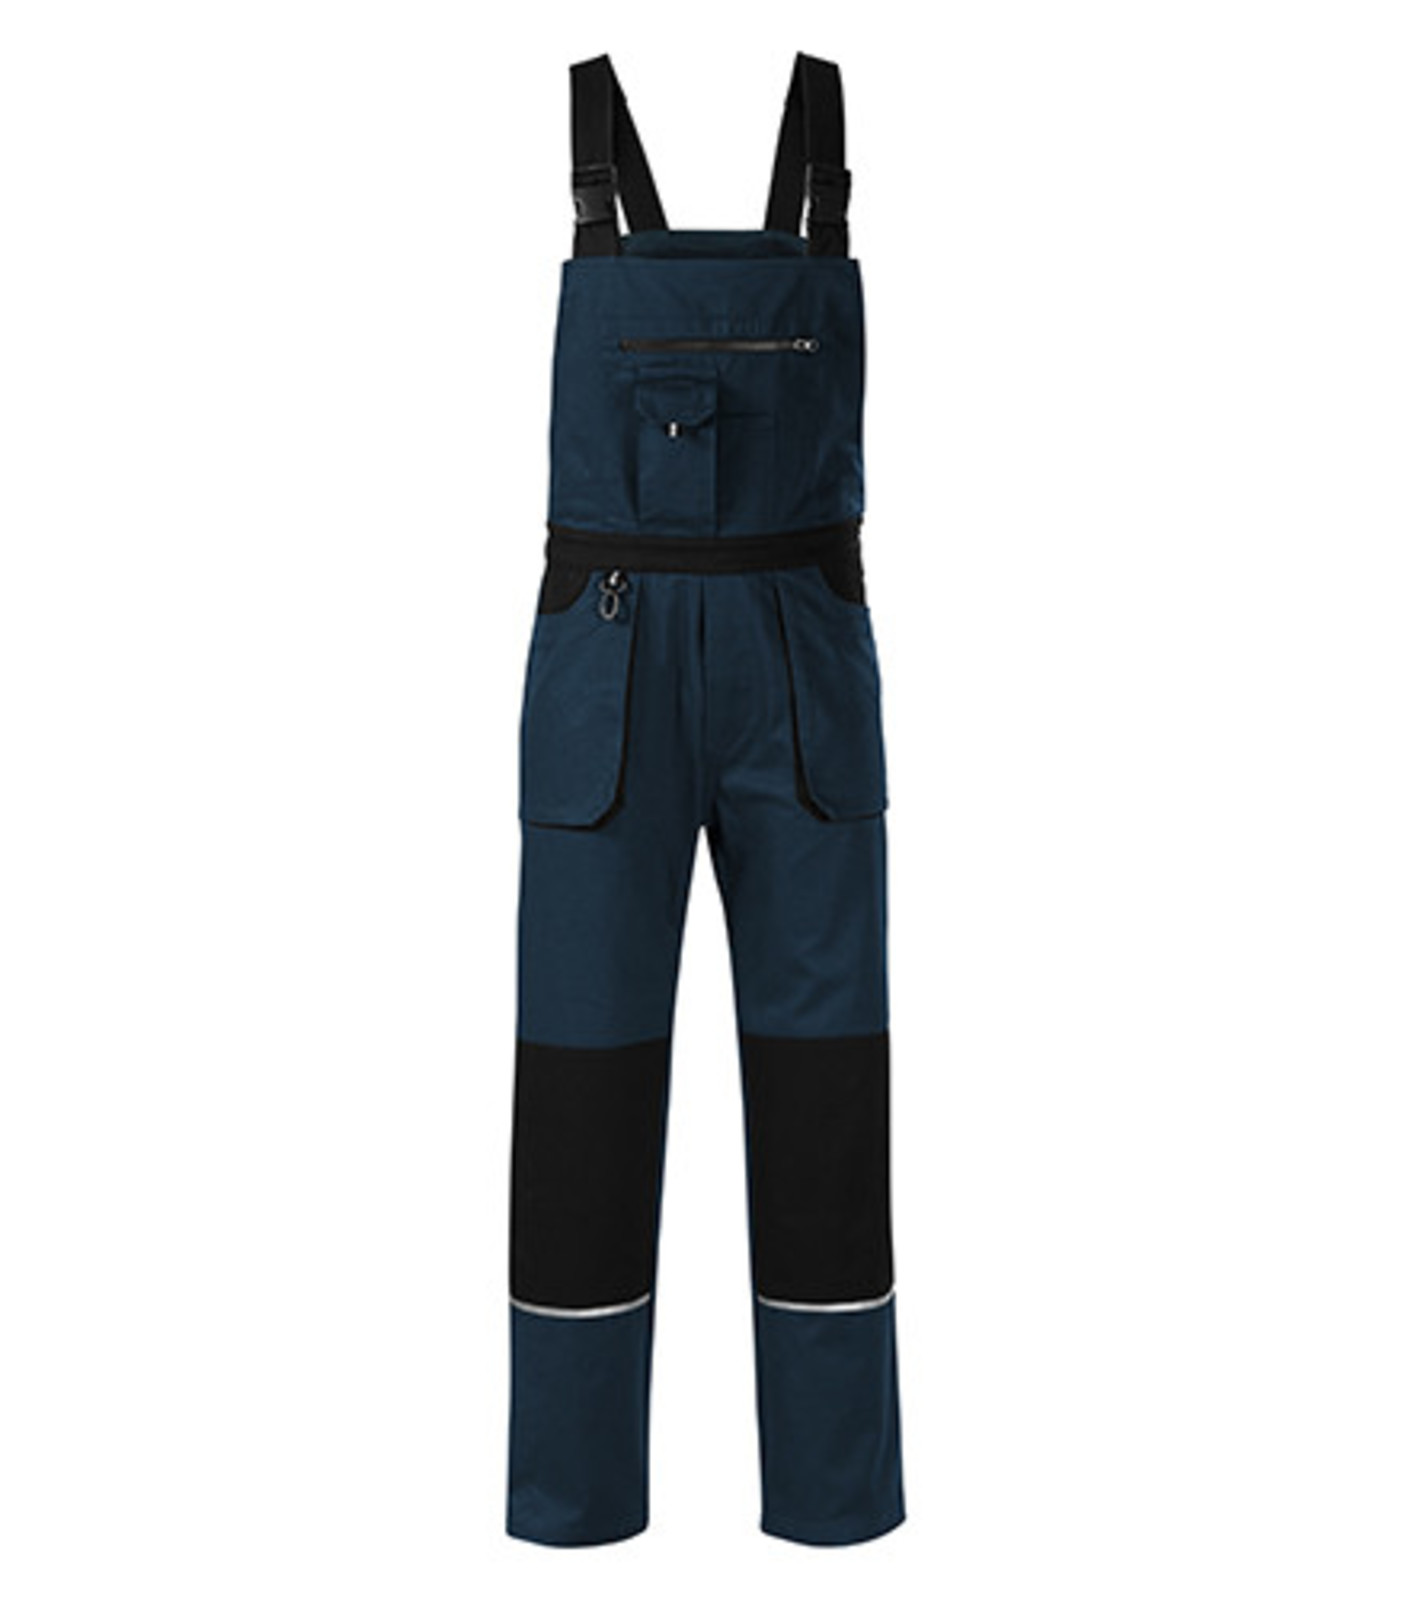 Montérkové nohavice s náprsenkou Adler Woody W02 - veľkosť: 56-58, farba: tmavo modrá